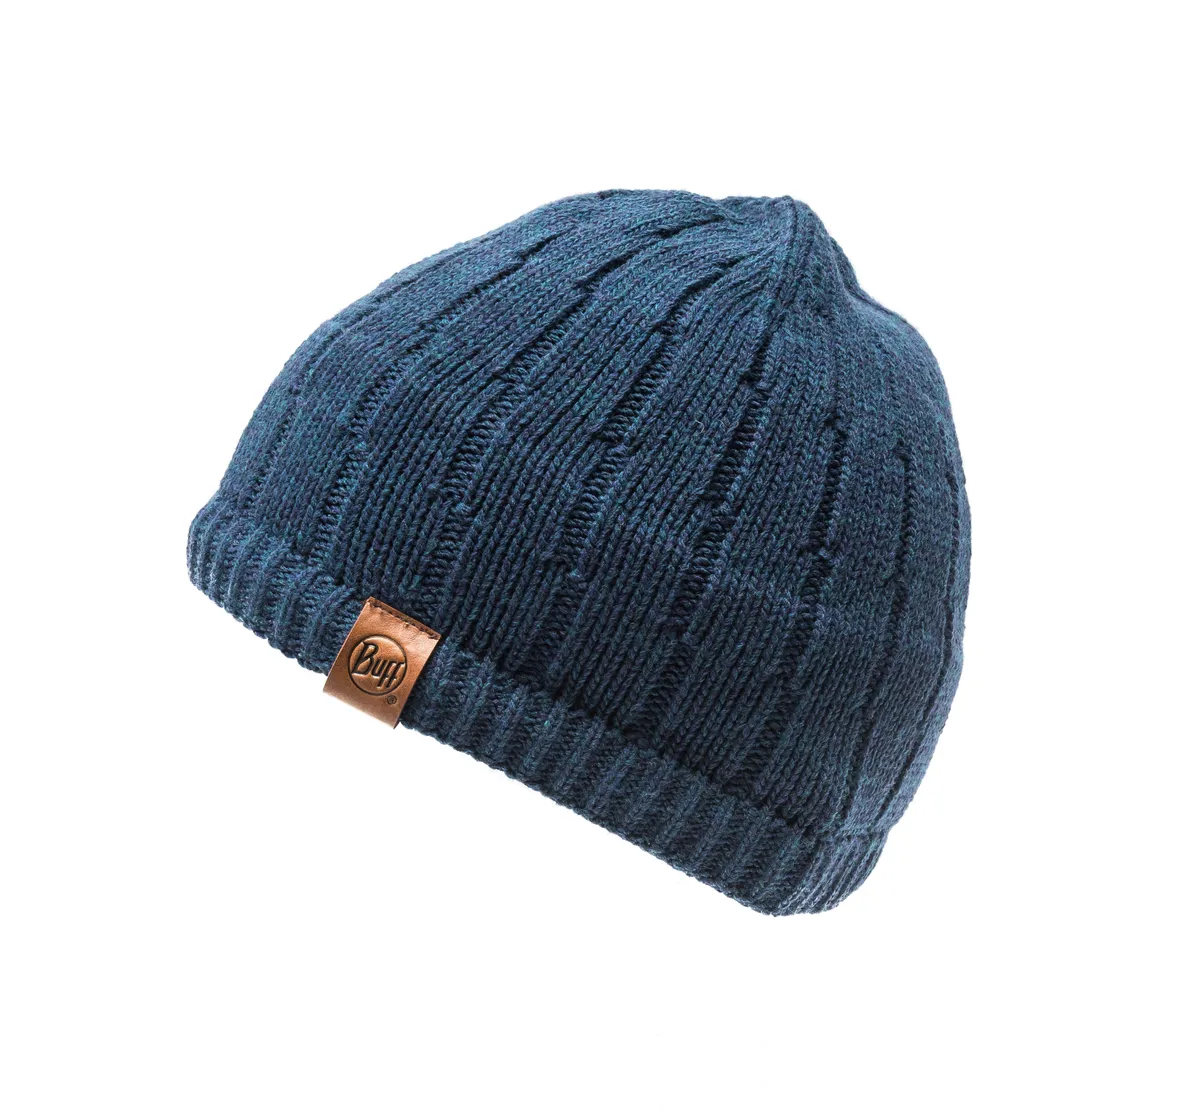 Jeroen knitted hat by Buffwear